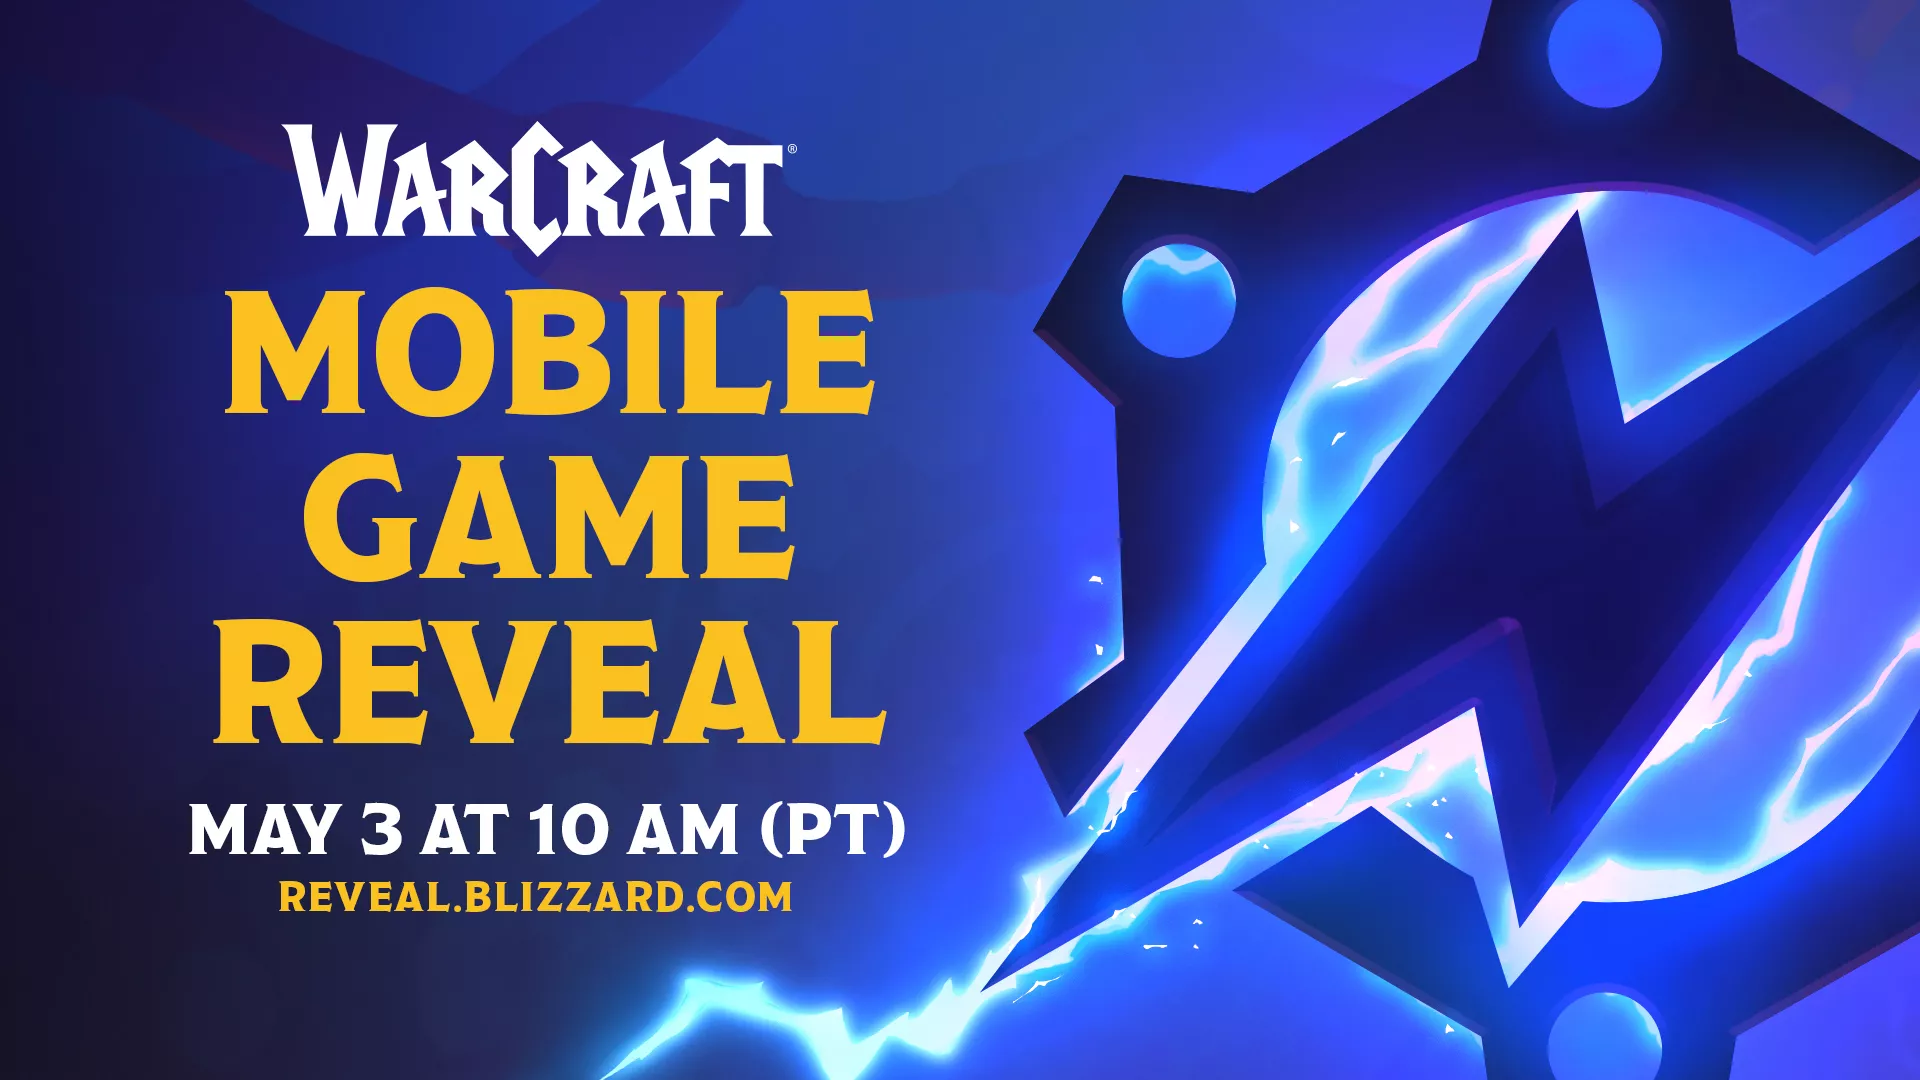 Am Dienstag Abend enthüllen Blizzard das nächste Warcraft Spiel für Smartphones Heropic